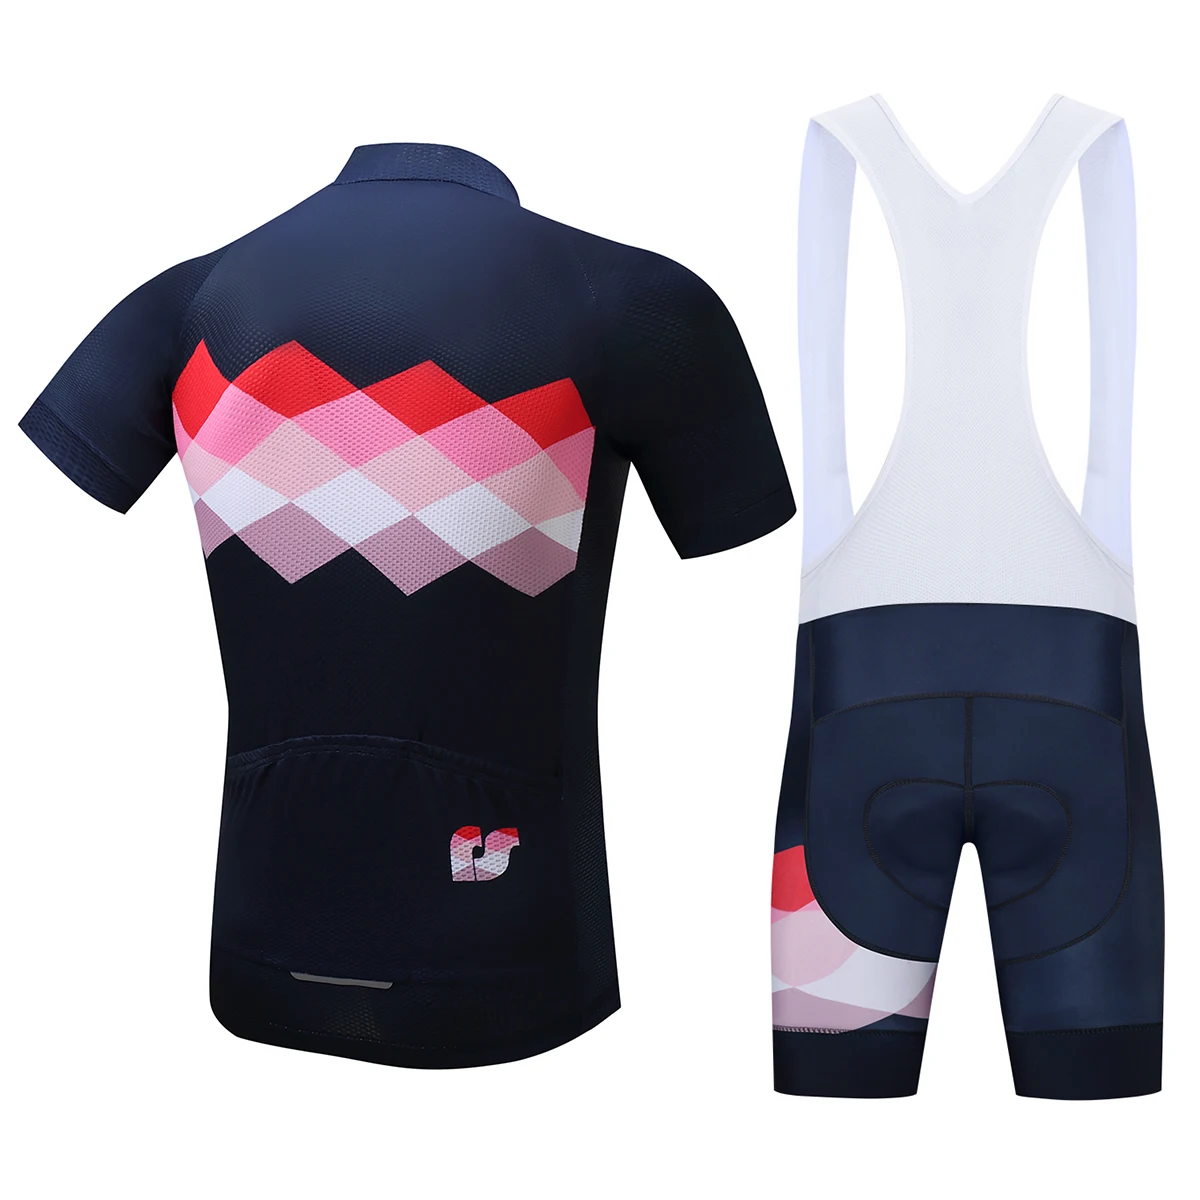 Surea летний велосипедный костюм с короткими рукавами Ropa Ciclismo одежда для горного велосипеда/дышащая мужская спортивная одежда для велосипеда